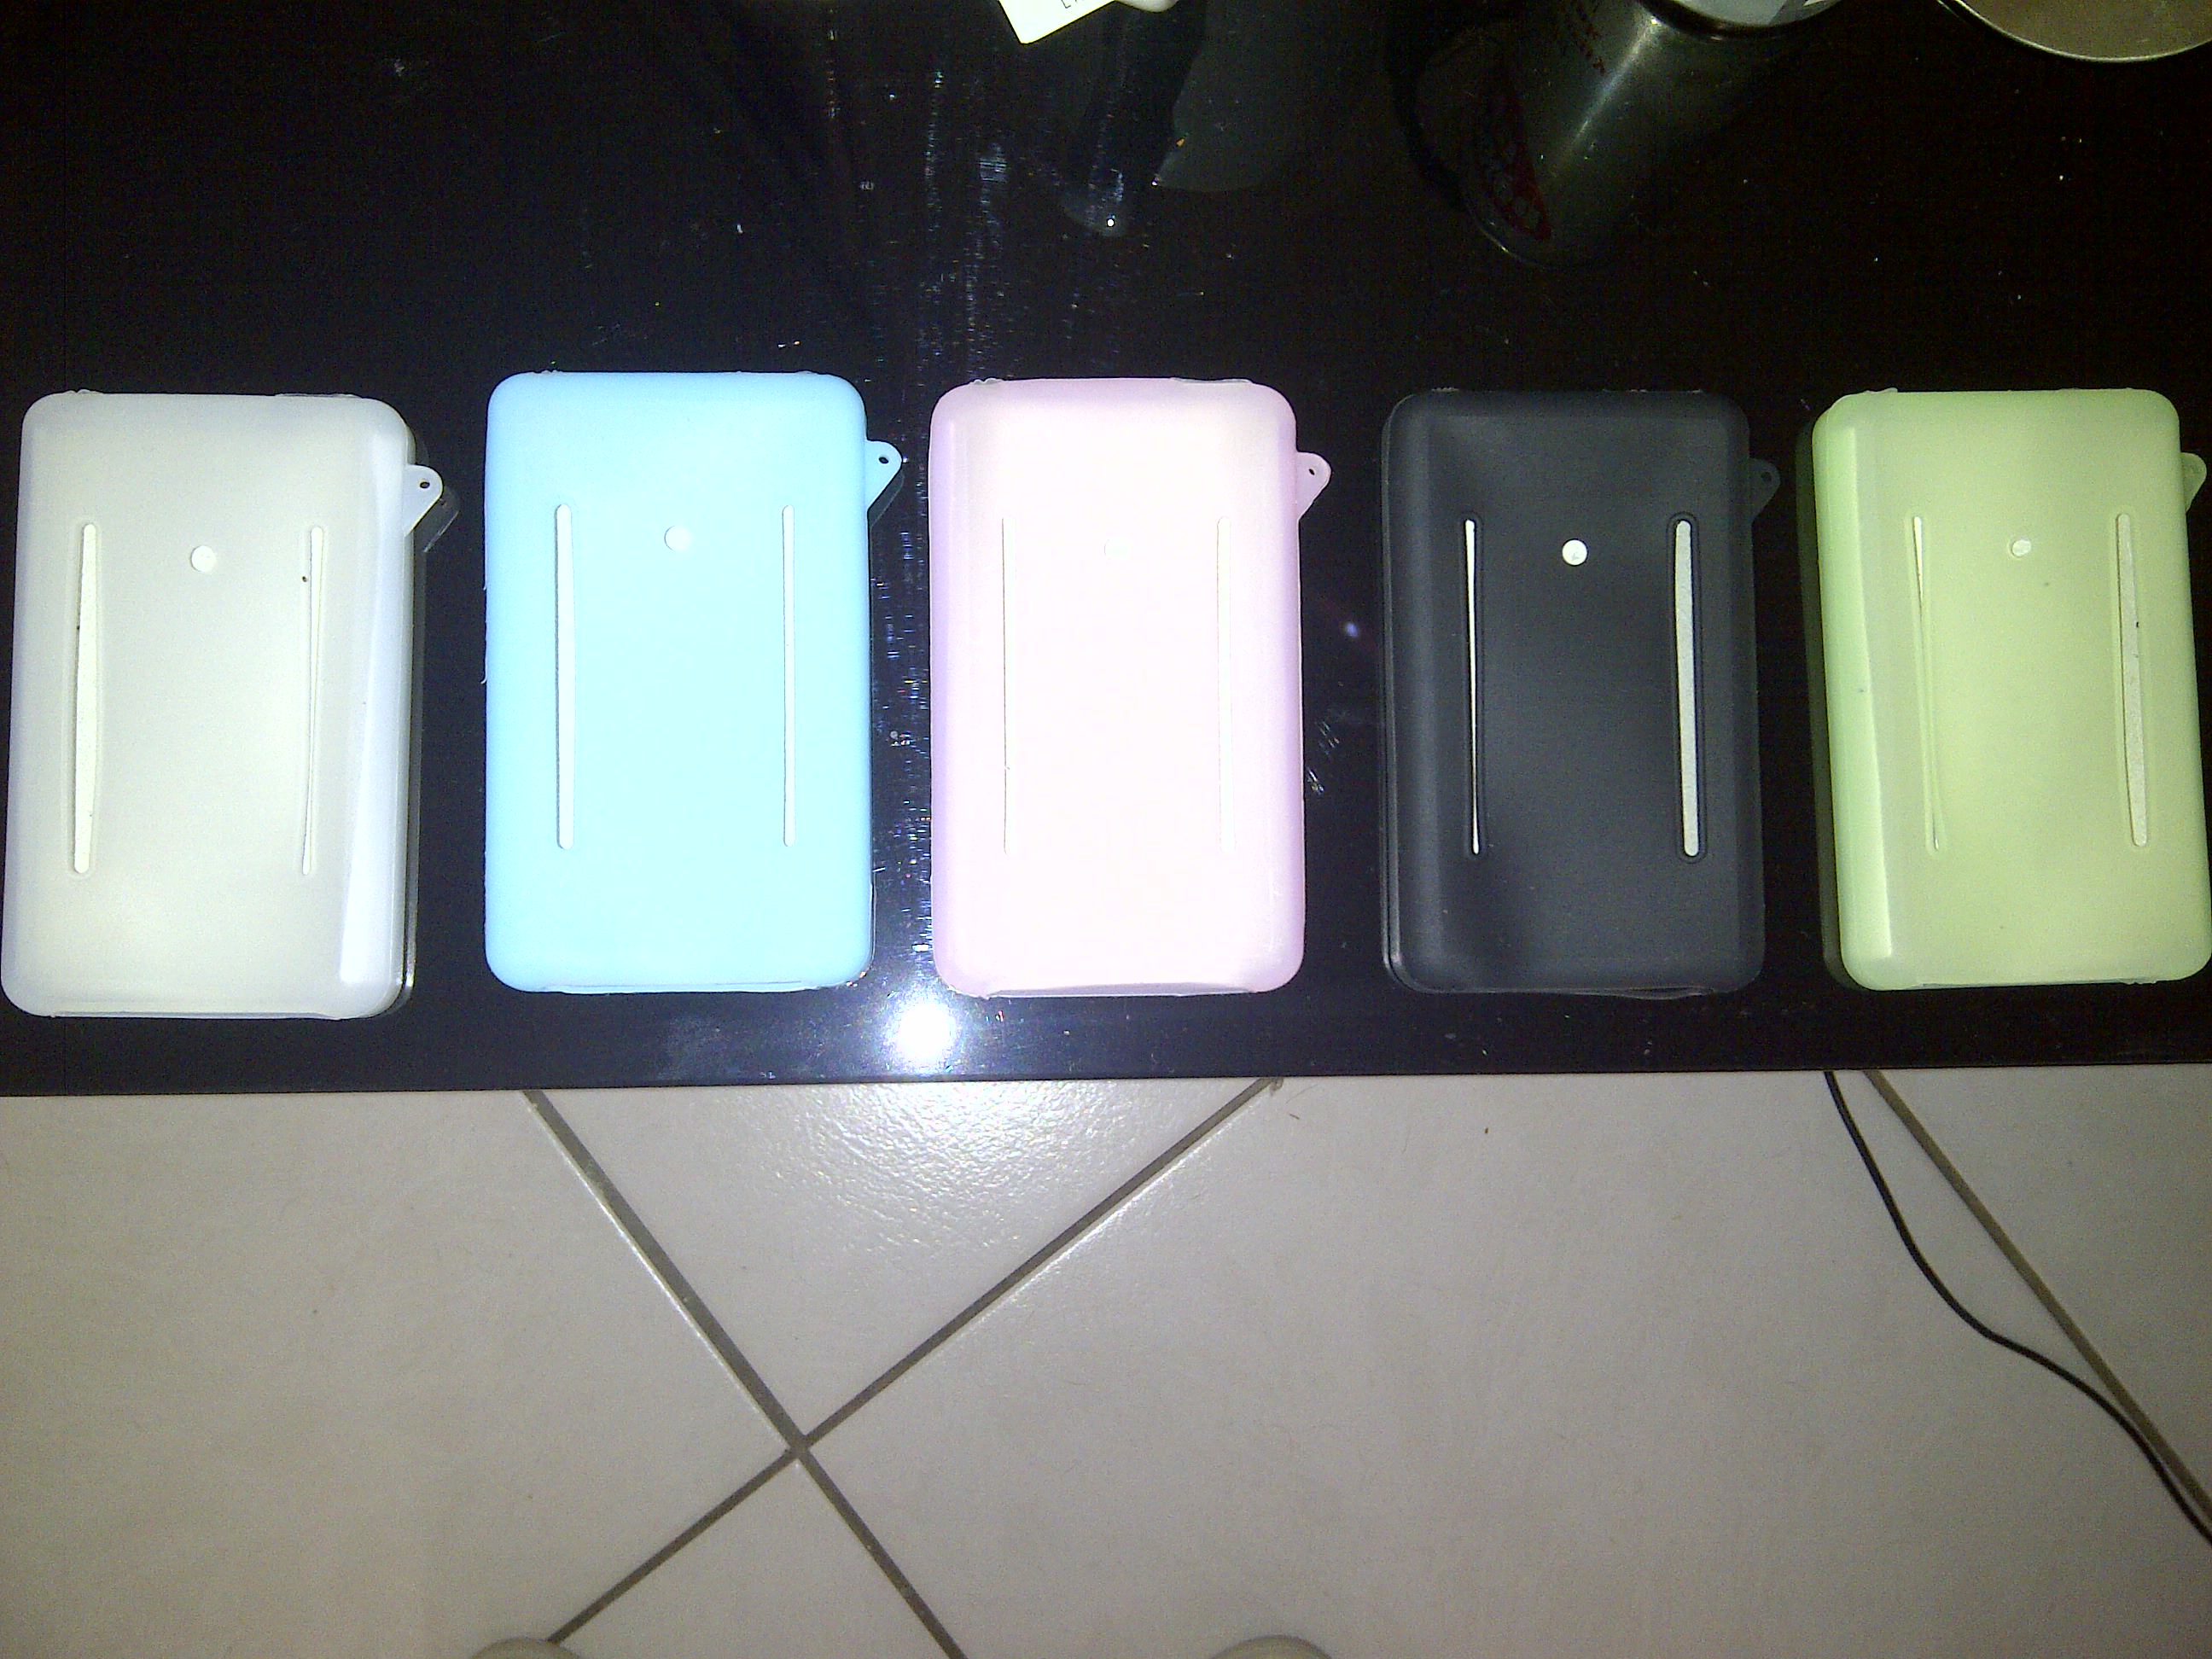 iPod classic siliconen hoesjes 200 stuks in 5 kleuren!!-ipod-hoesjes2-jpg